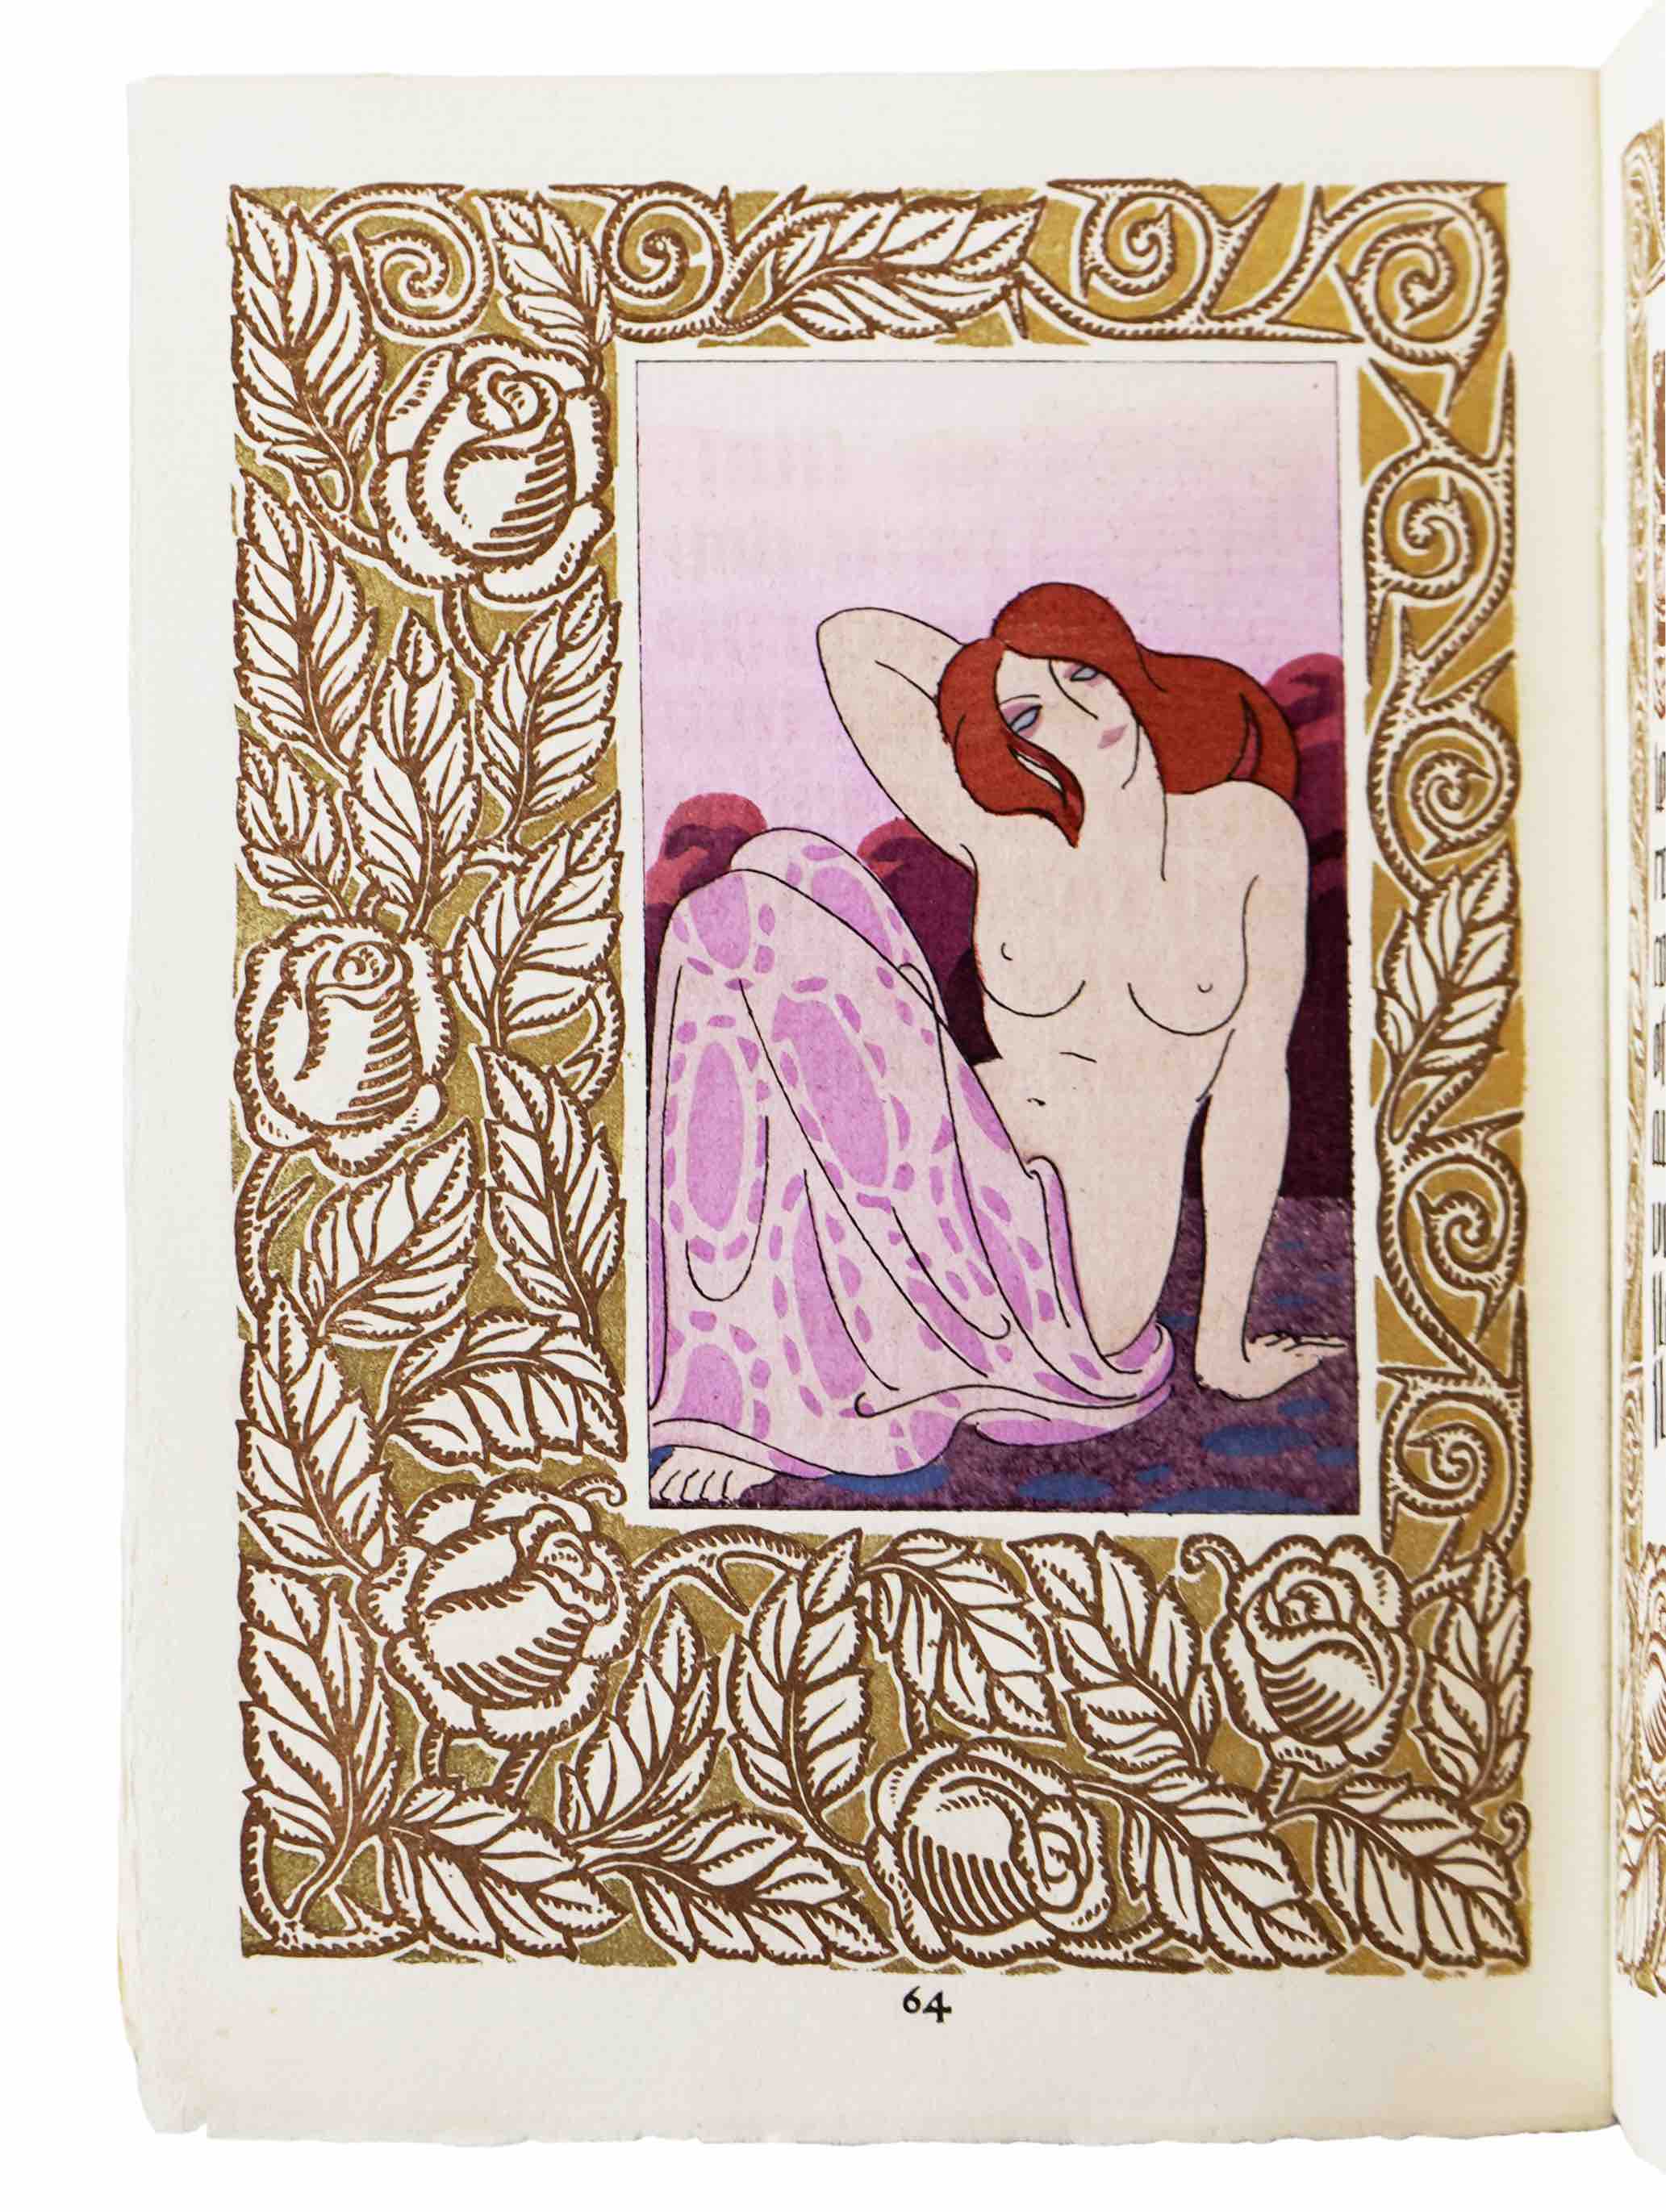 DOMIN, ANDR (Ill.) / GOURMONT, RMY DE: - Litanies de la Rose. Paris, Ren Kieffer, 1919.